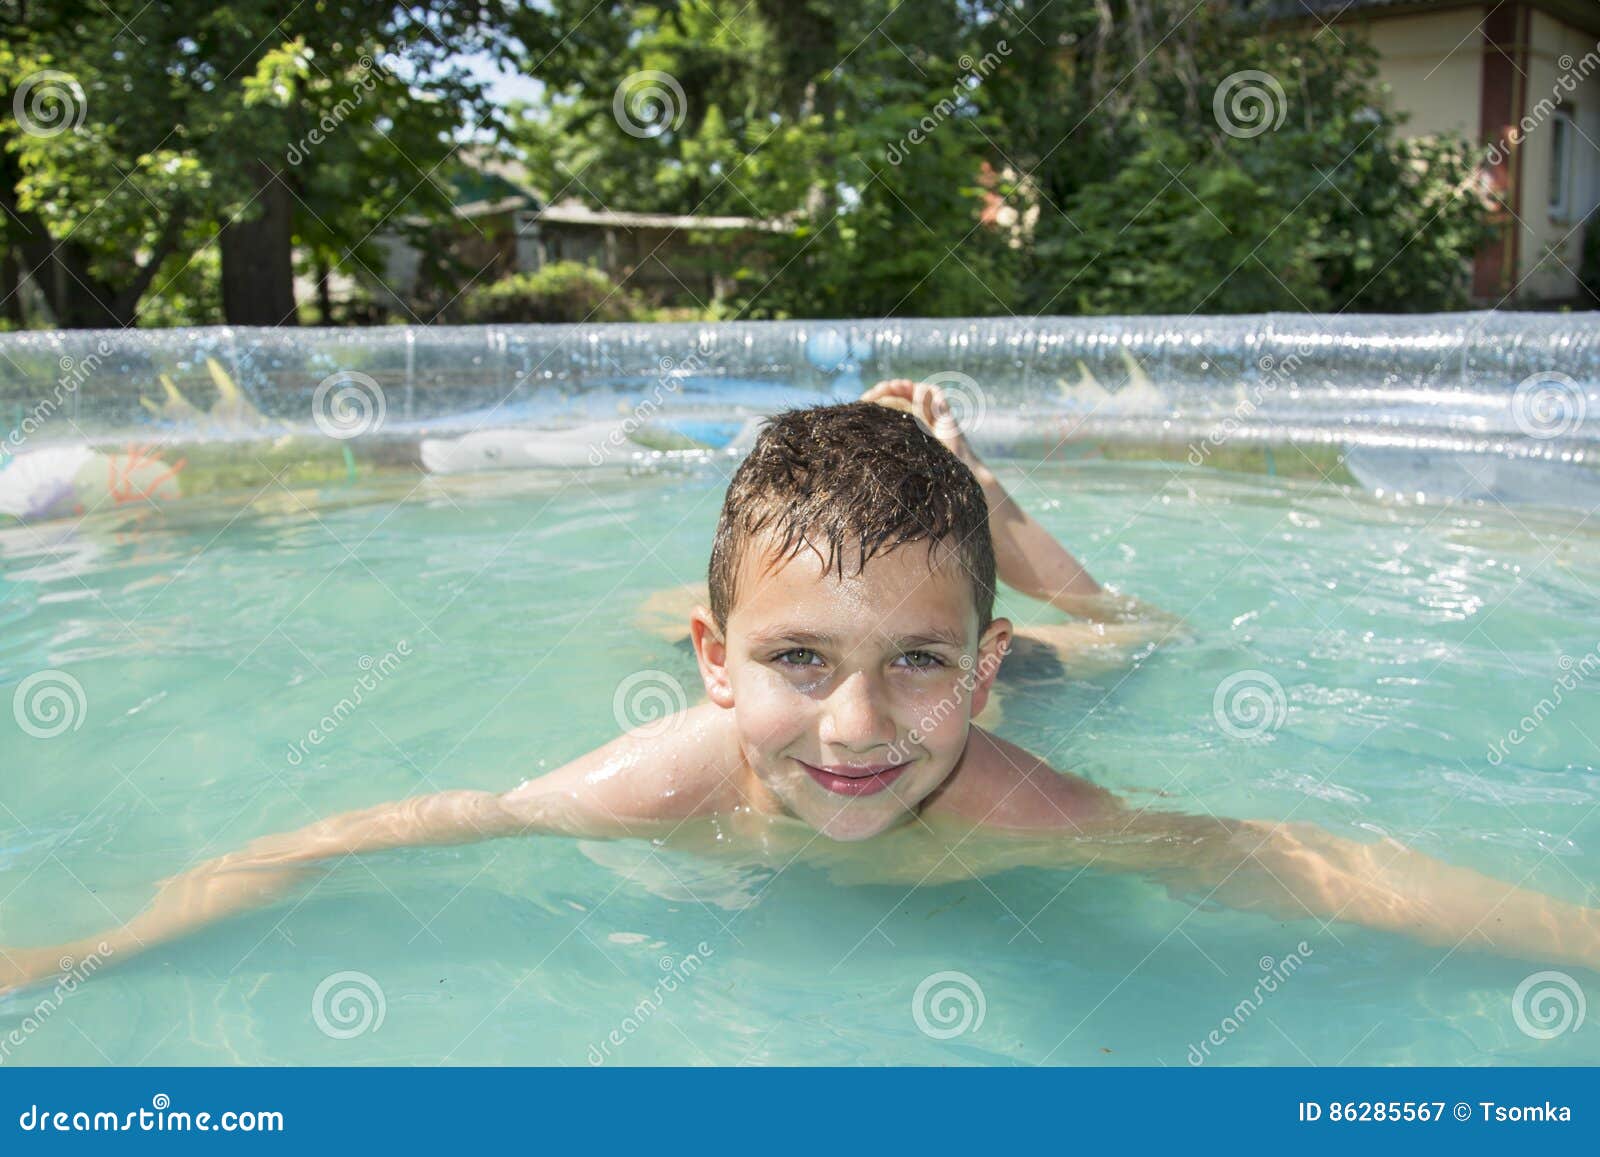 Парень купается в бассейне. Мальчик купается в бассейне. Мальчик 10 лет купается в бассейне. Бассейн для купания летом. Мальчики на даче купаются в бассейне.